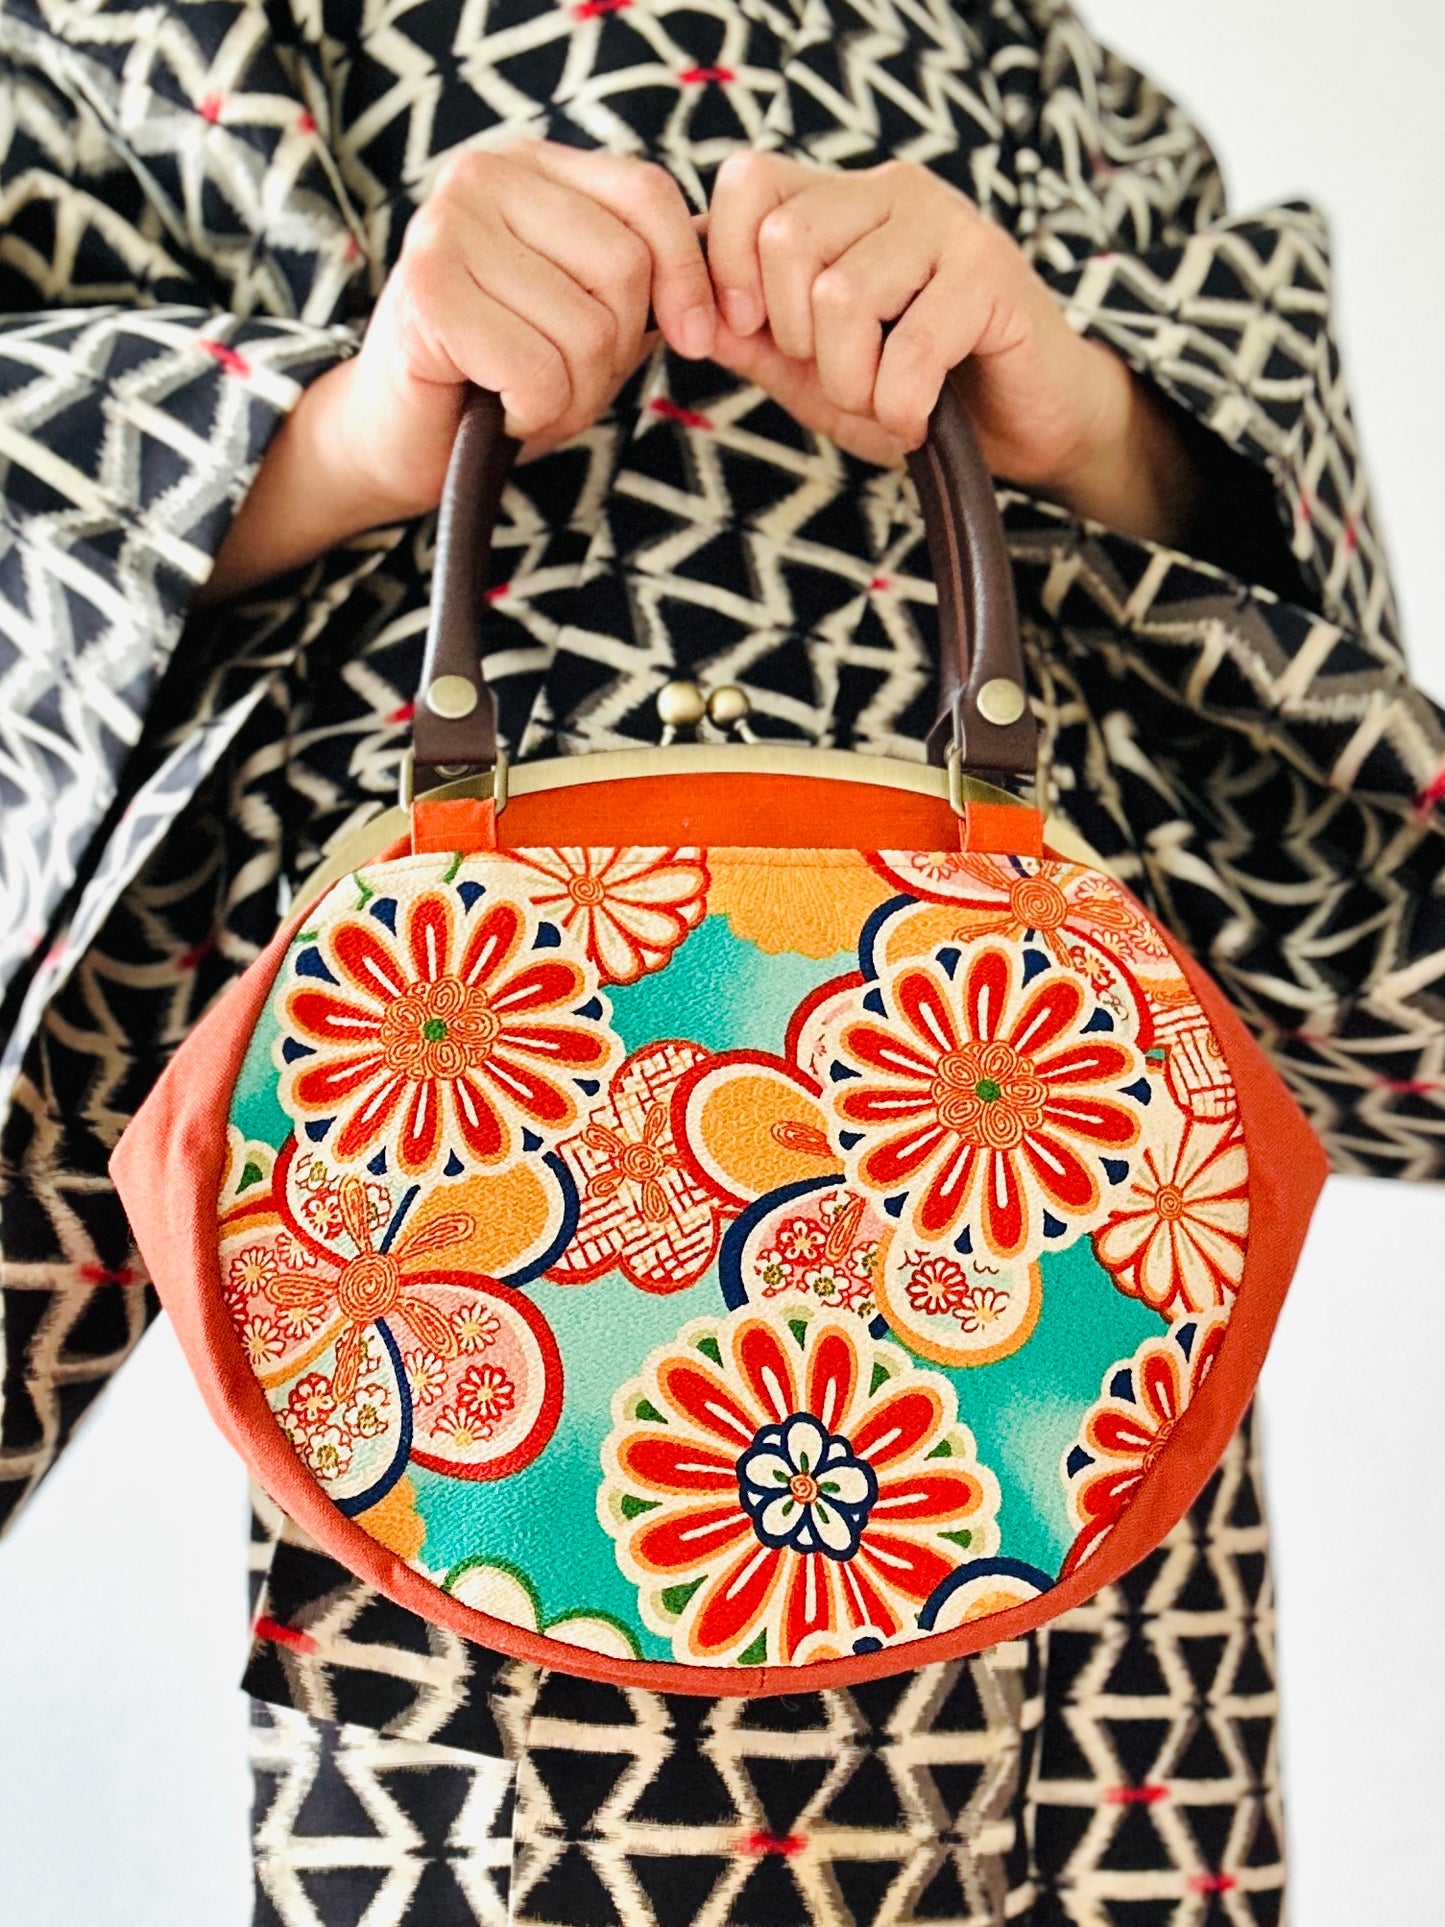 【Orange / Fleurs】 Gamaguchi-en / Handbag, embrayage, pochette, sac japonais, sac d'écoute, cadeaux japonais